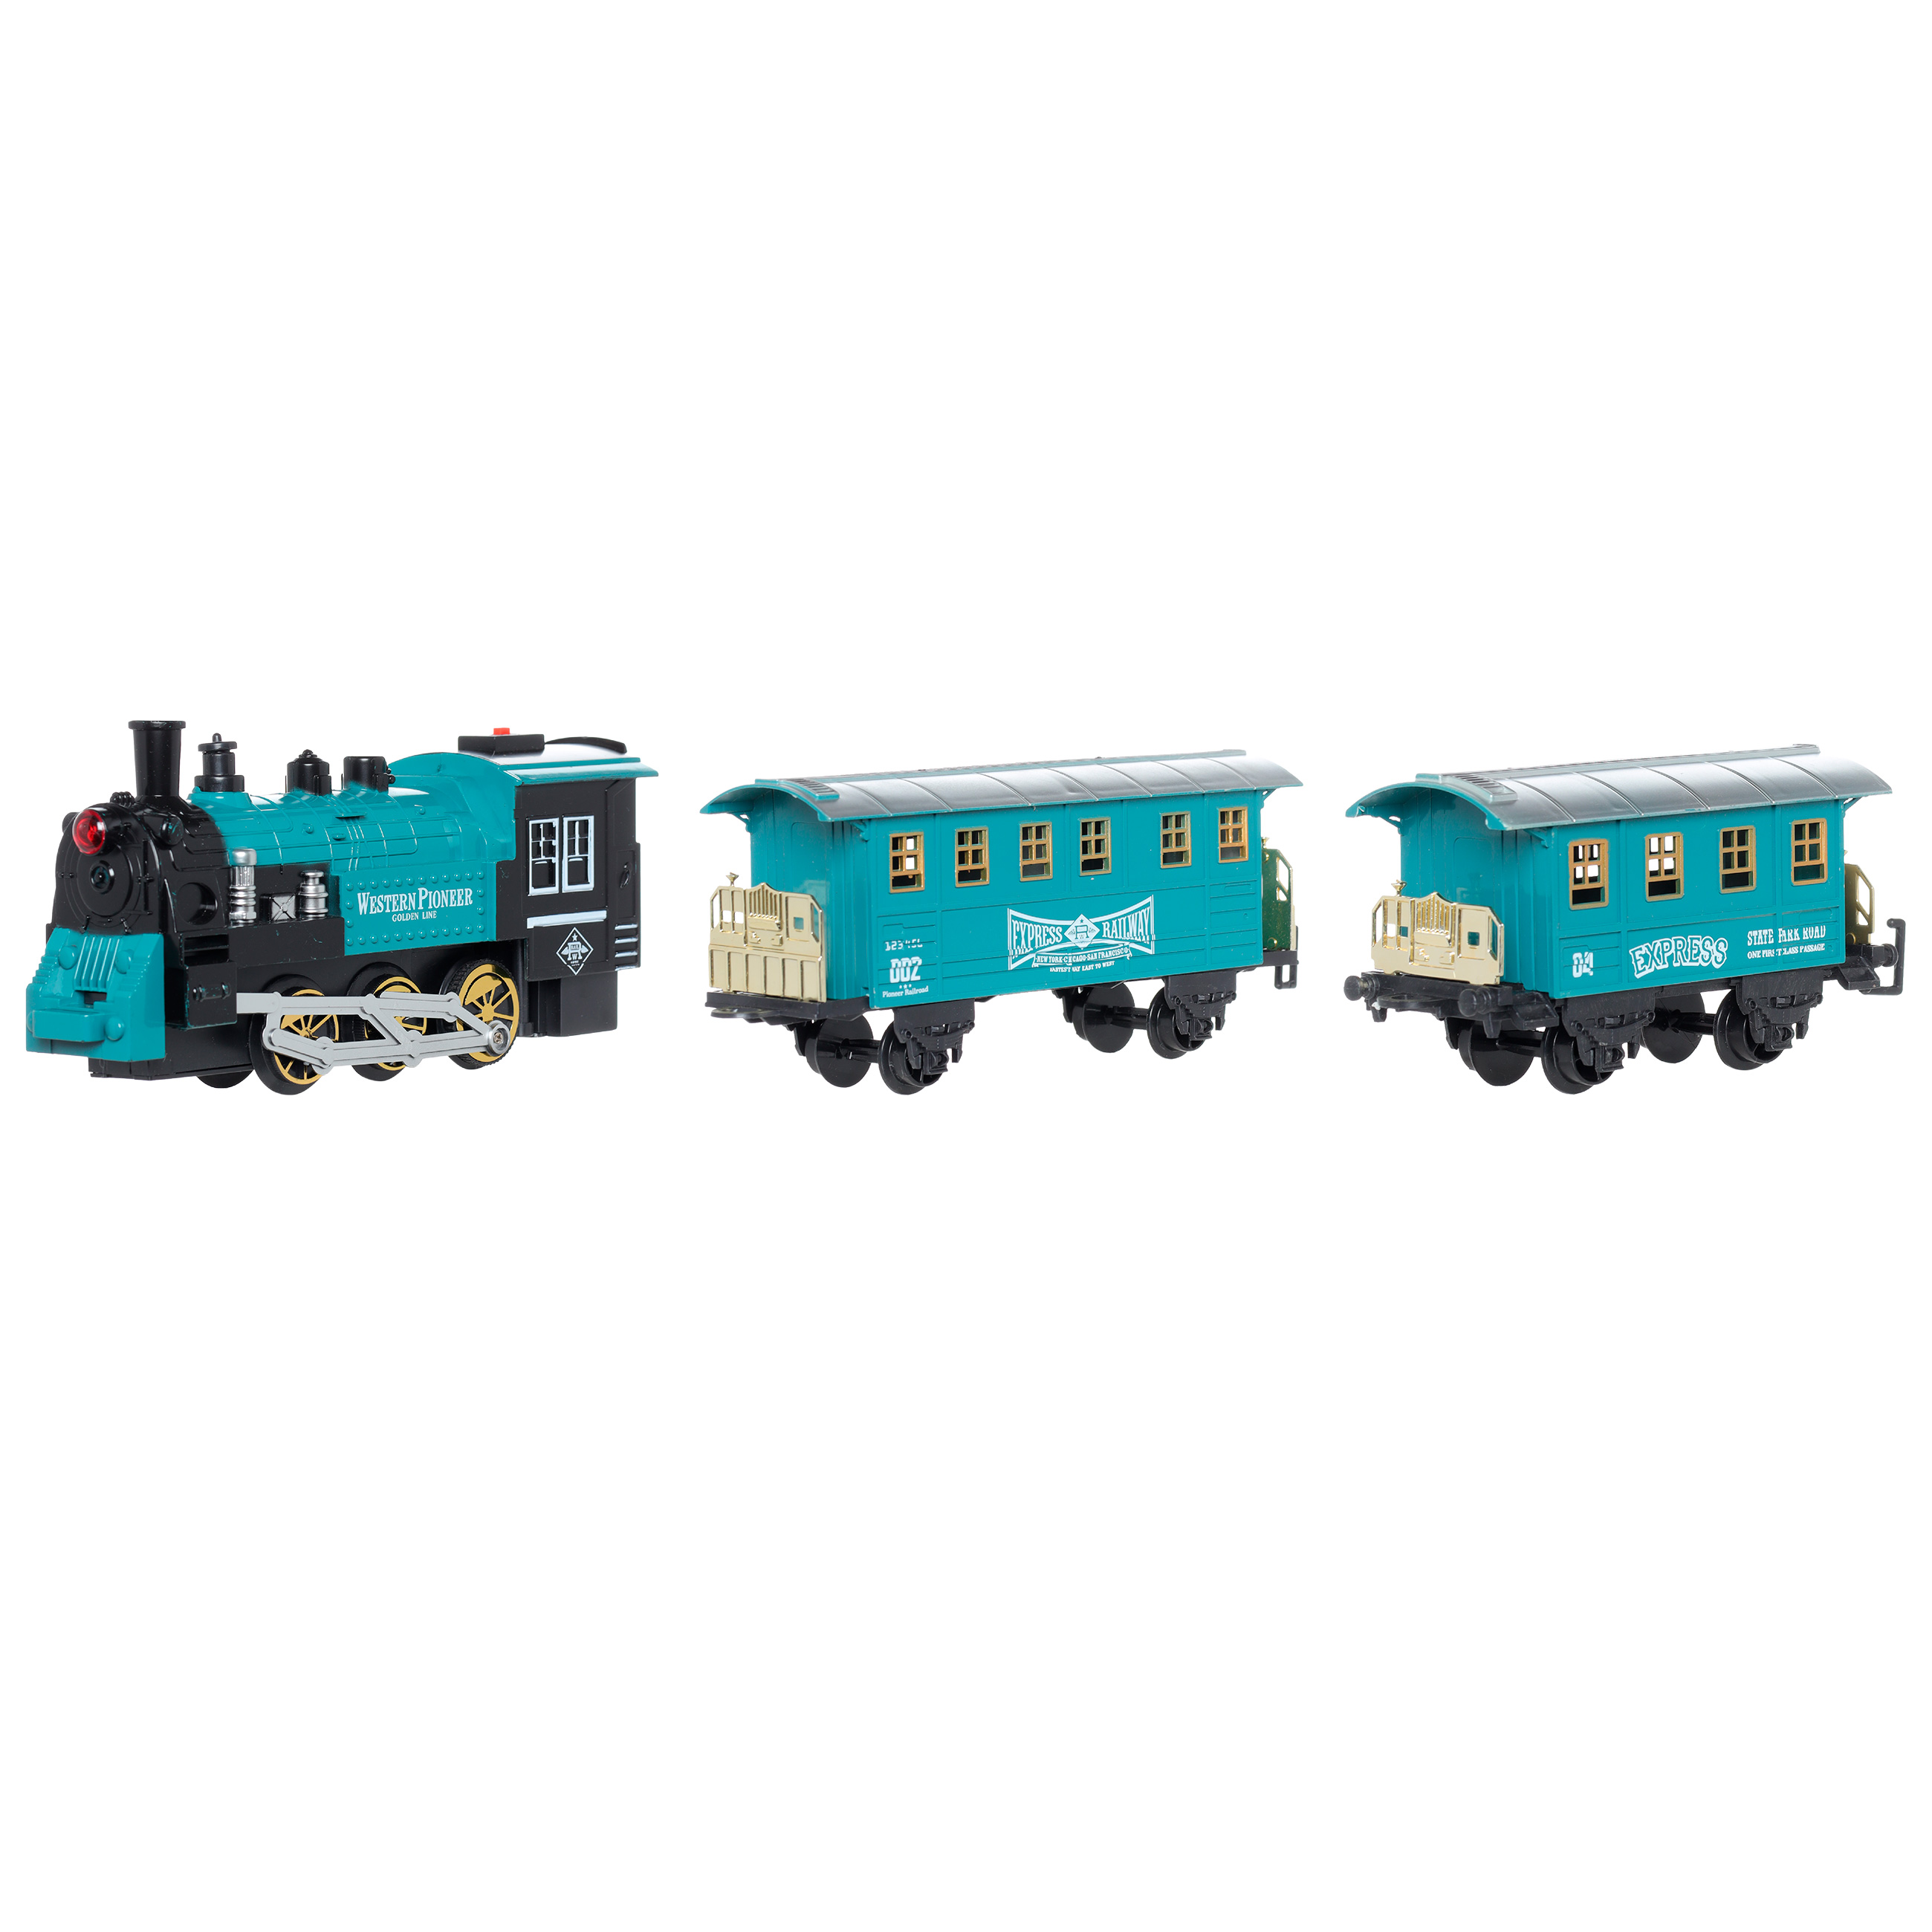 Железная дорога игрушечная, L, музыкальная, с подсветкой/дымом, пластик, Game rail изображение № 3